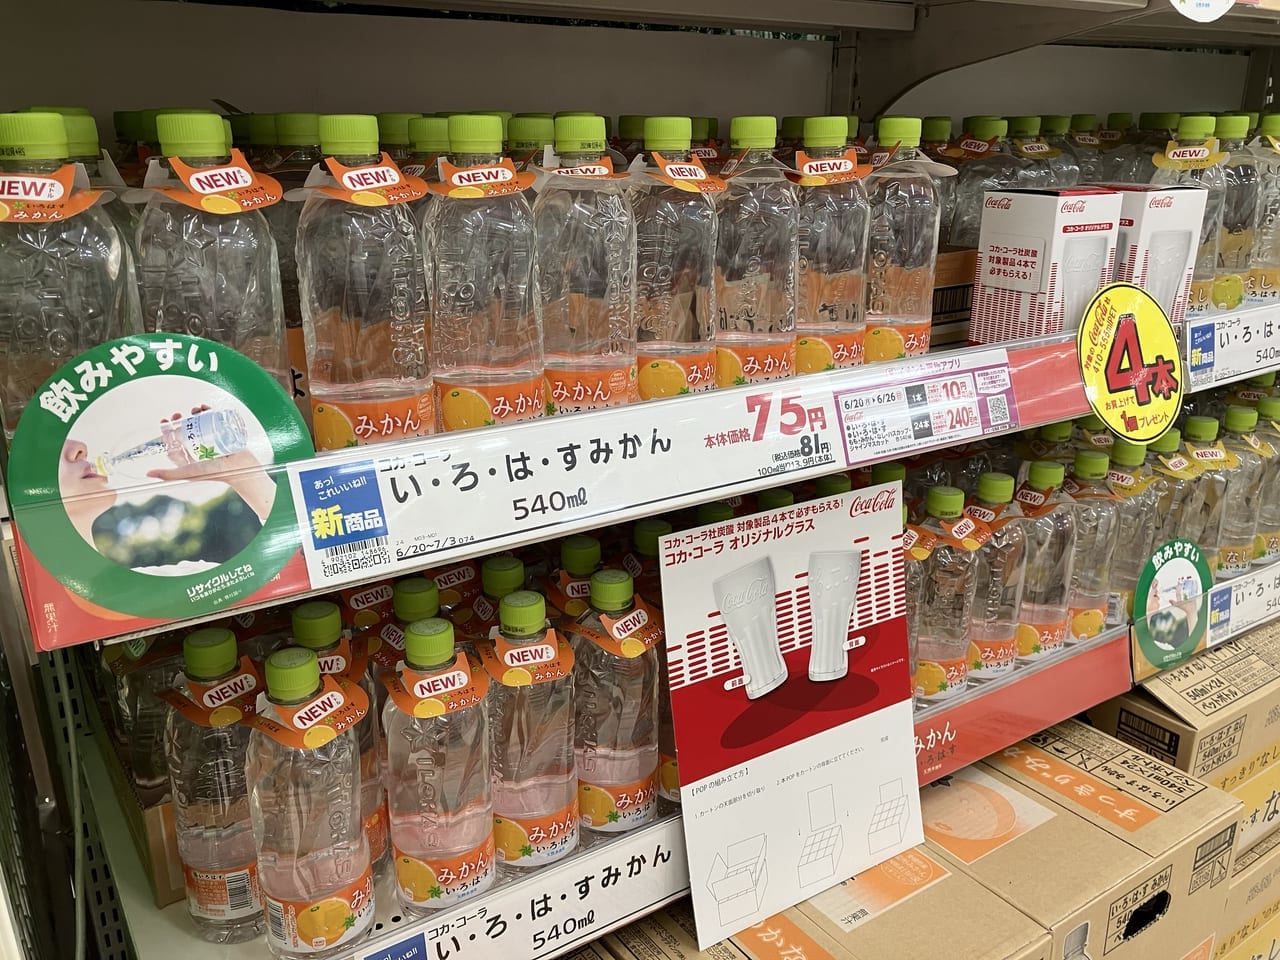 6月20日より北海道先行発売の「い・ろ・は・す天然水」が販売中。ボトルデザインが一新して飲み心地に変化も？